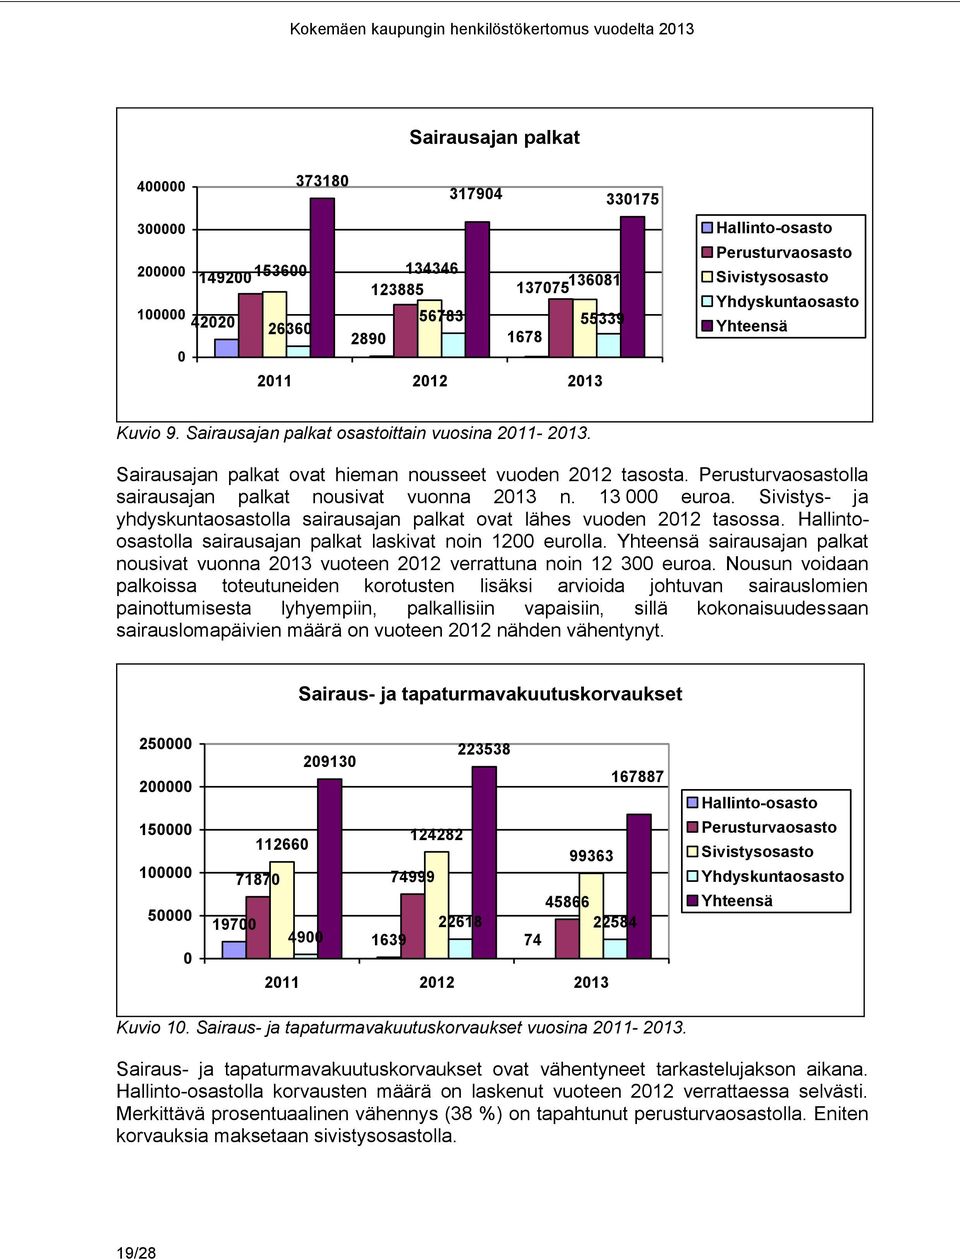 Sivistys- ja yhdyskuntaosastolla sairausajan palkat ovat lähes vuoden 2012 tasossa. Hallintoosastolla sairausajan palkat laskivat noin 1200 eurolla.